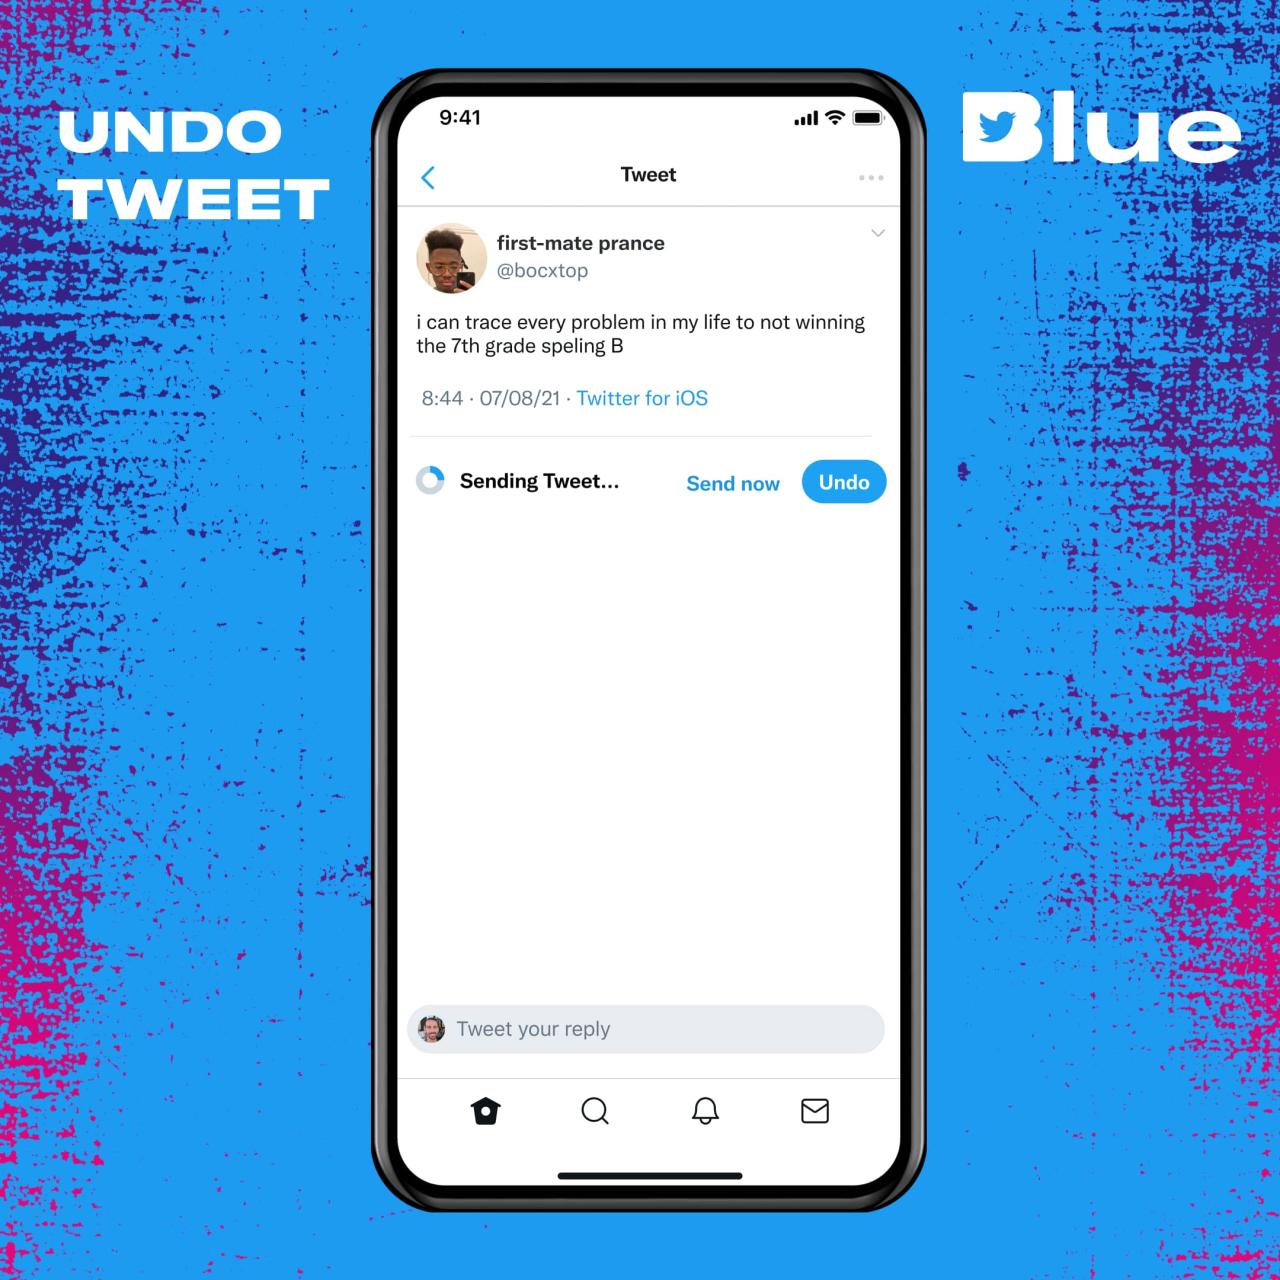 Gráfico promocional para la función Deshacer Tweet disponible con la suscripción a Twitter Blue en iPhone